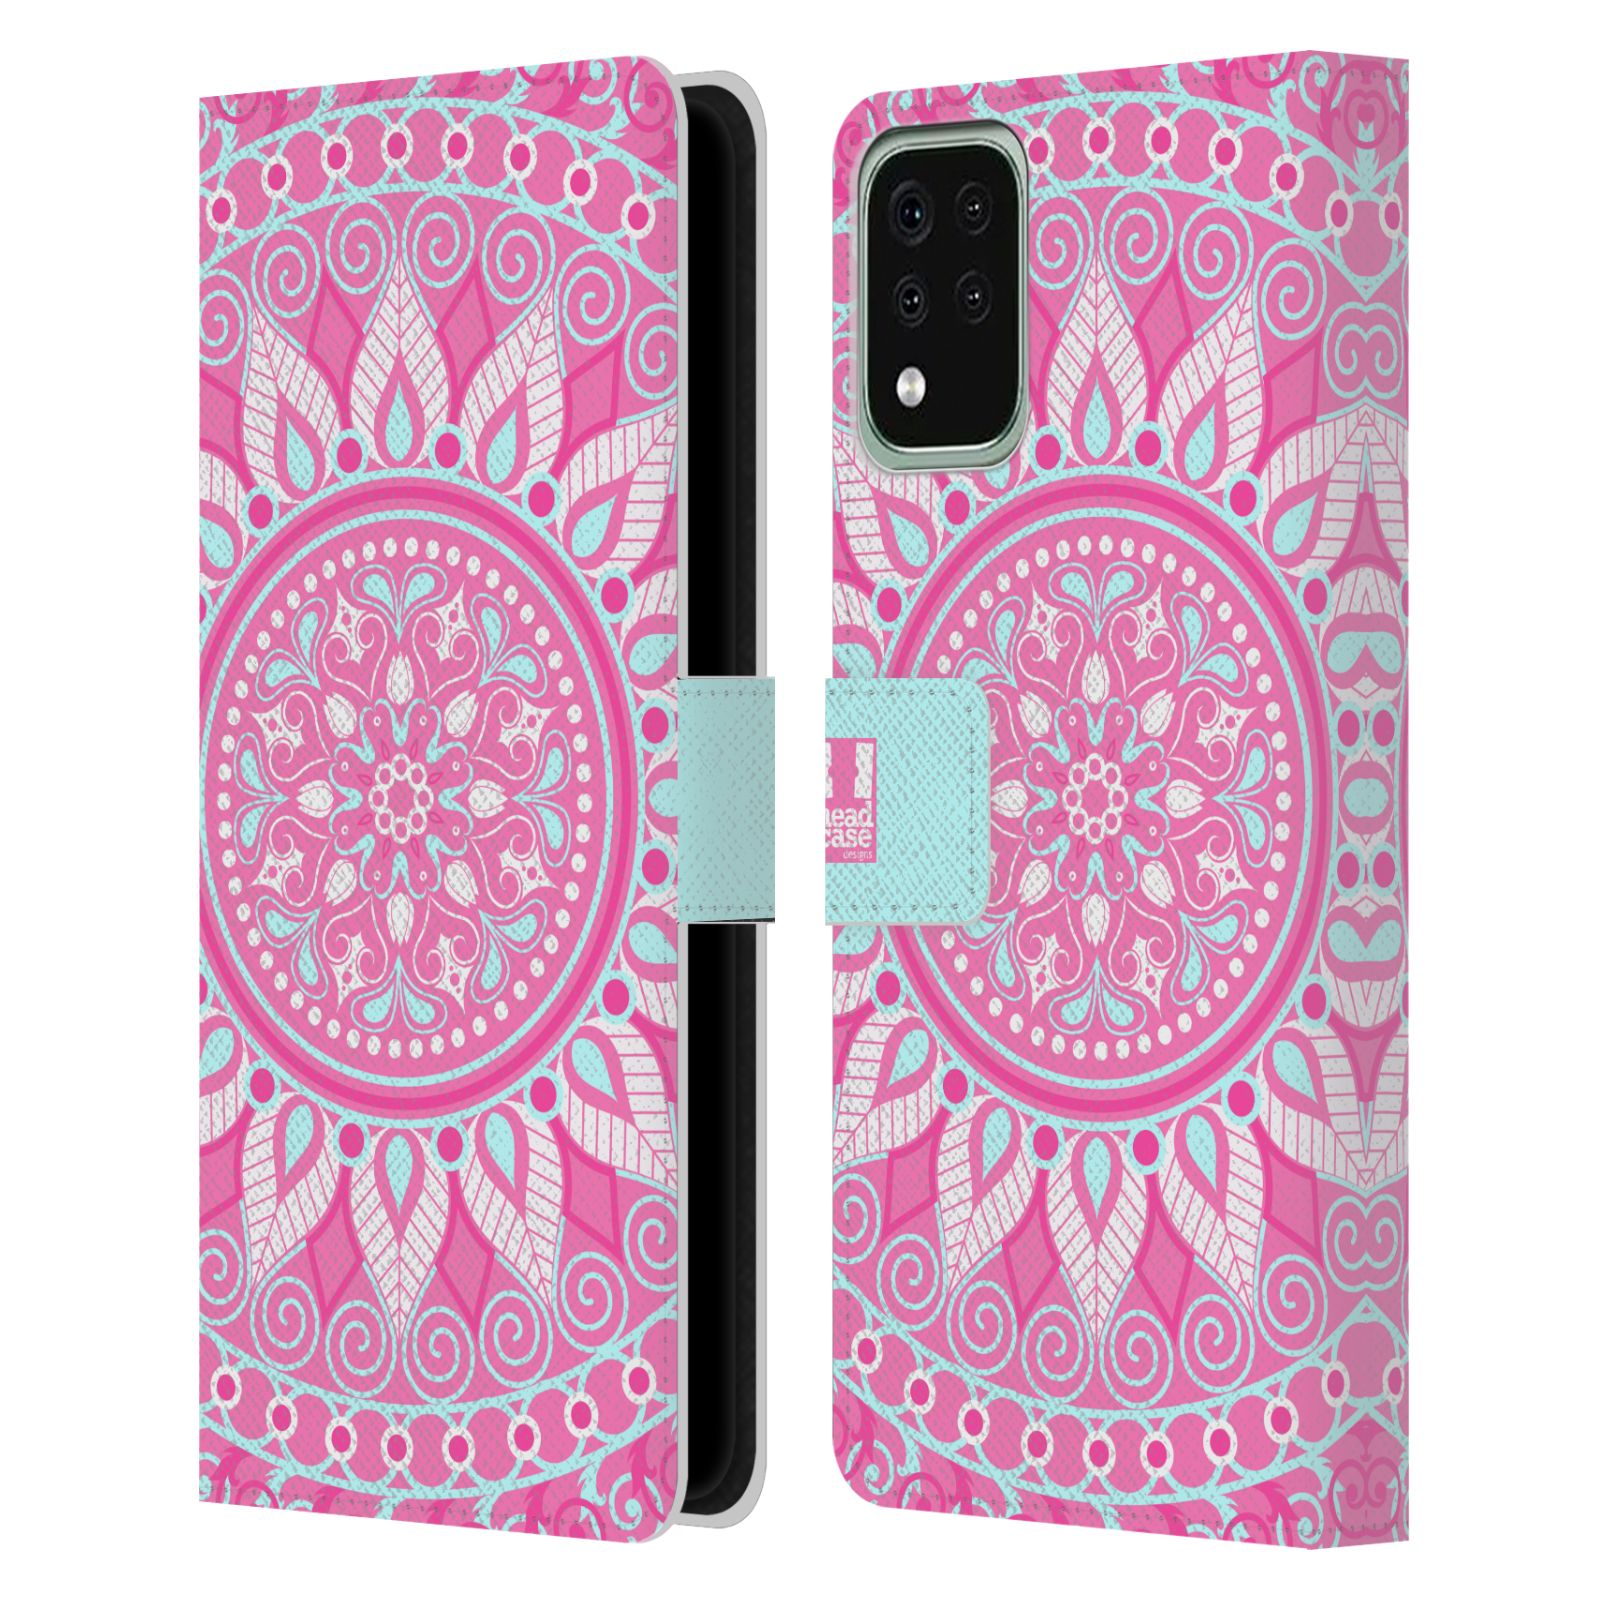 Pouzdro na mobil LG K42 / K52 / K62 - HEAD CASE - Mandala růžová